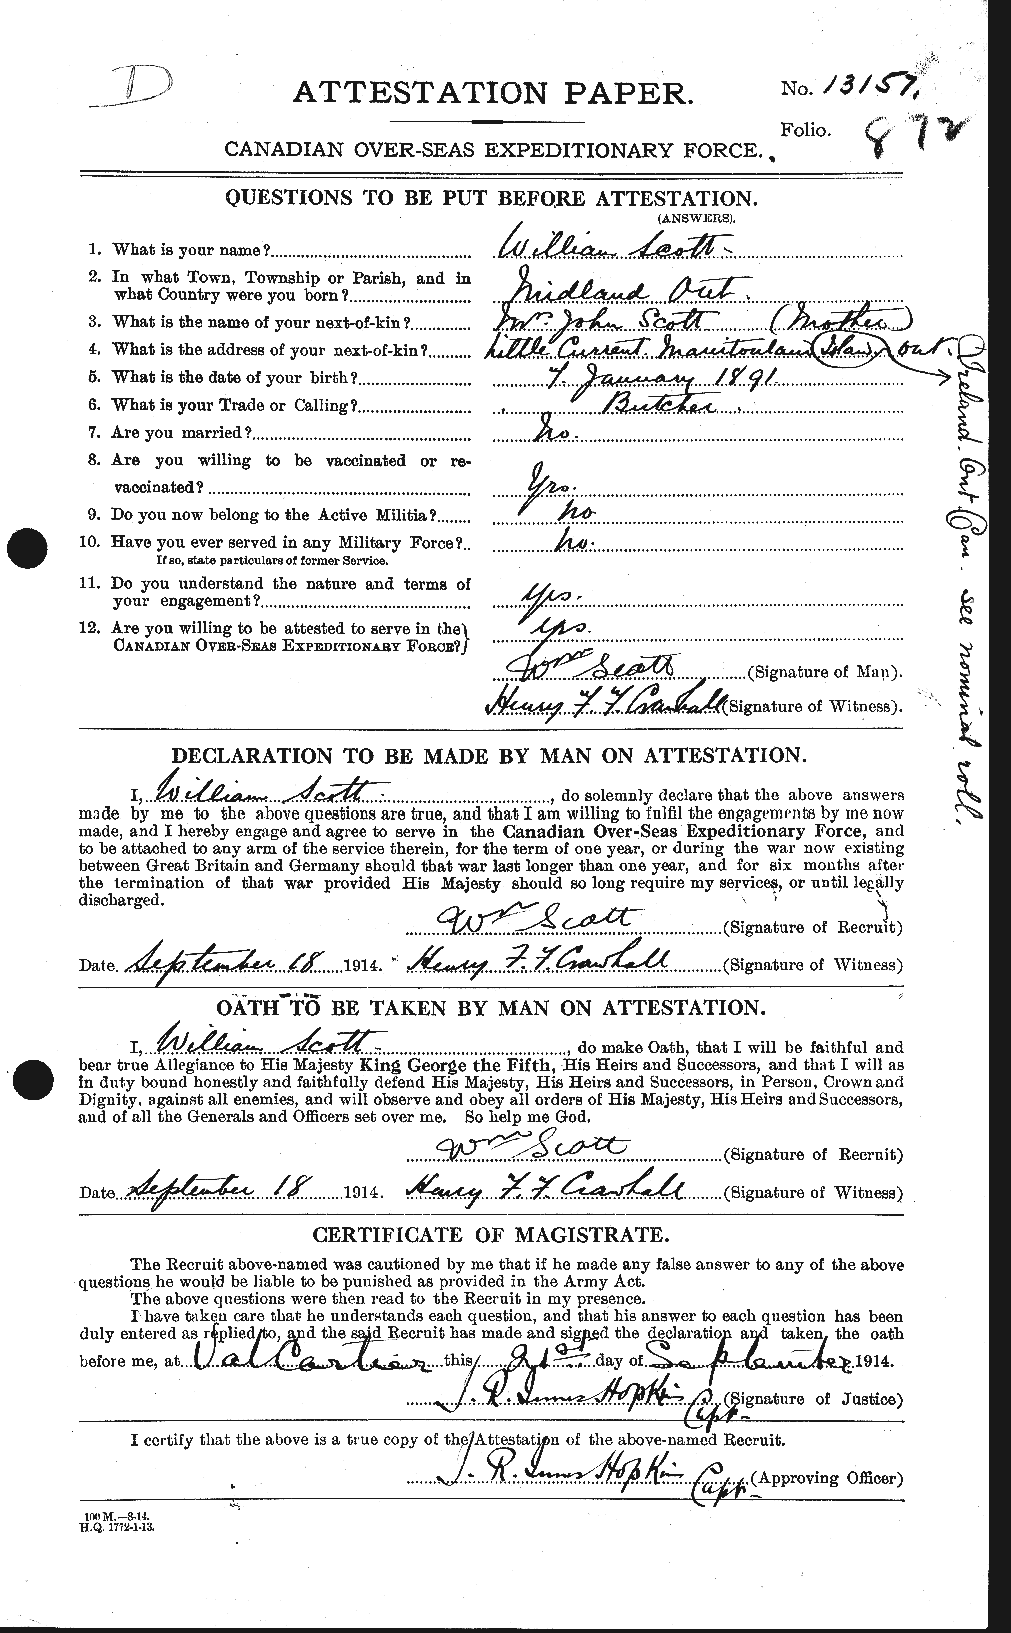 Dossiers du Personnel de la Première Guerre mondiale - CEC 087659a